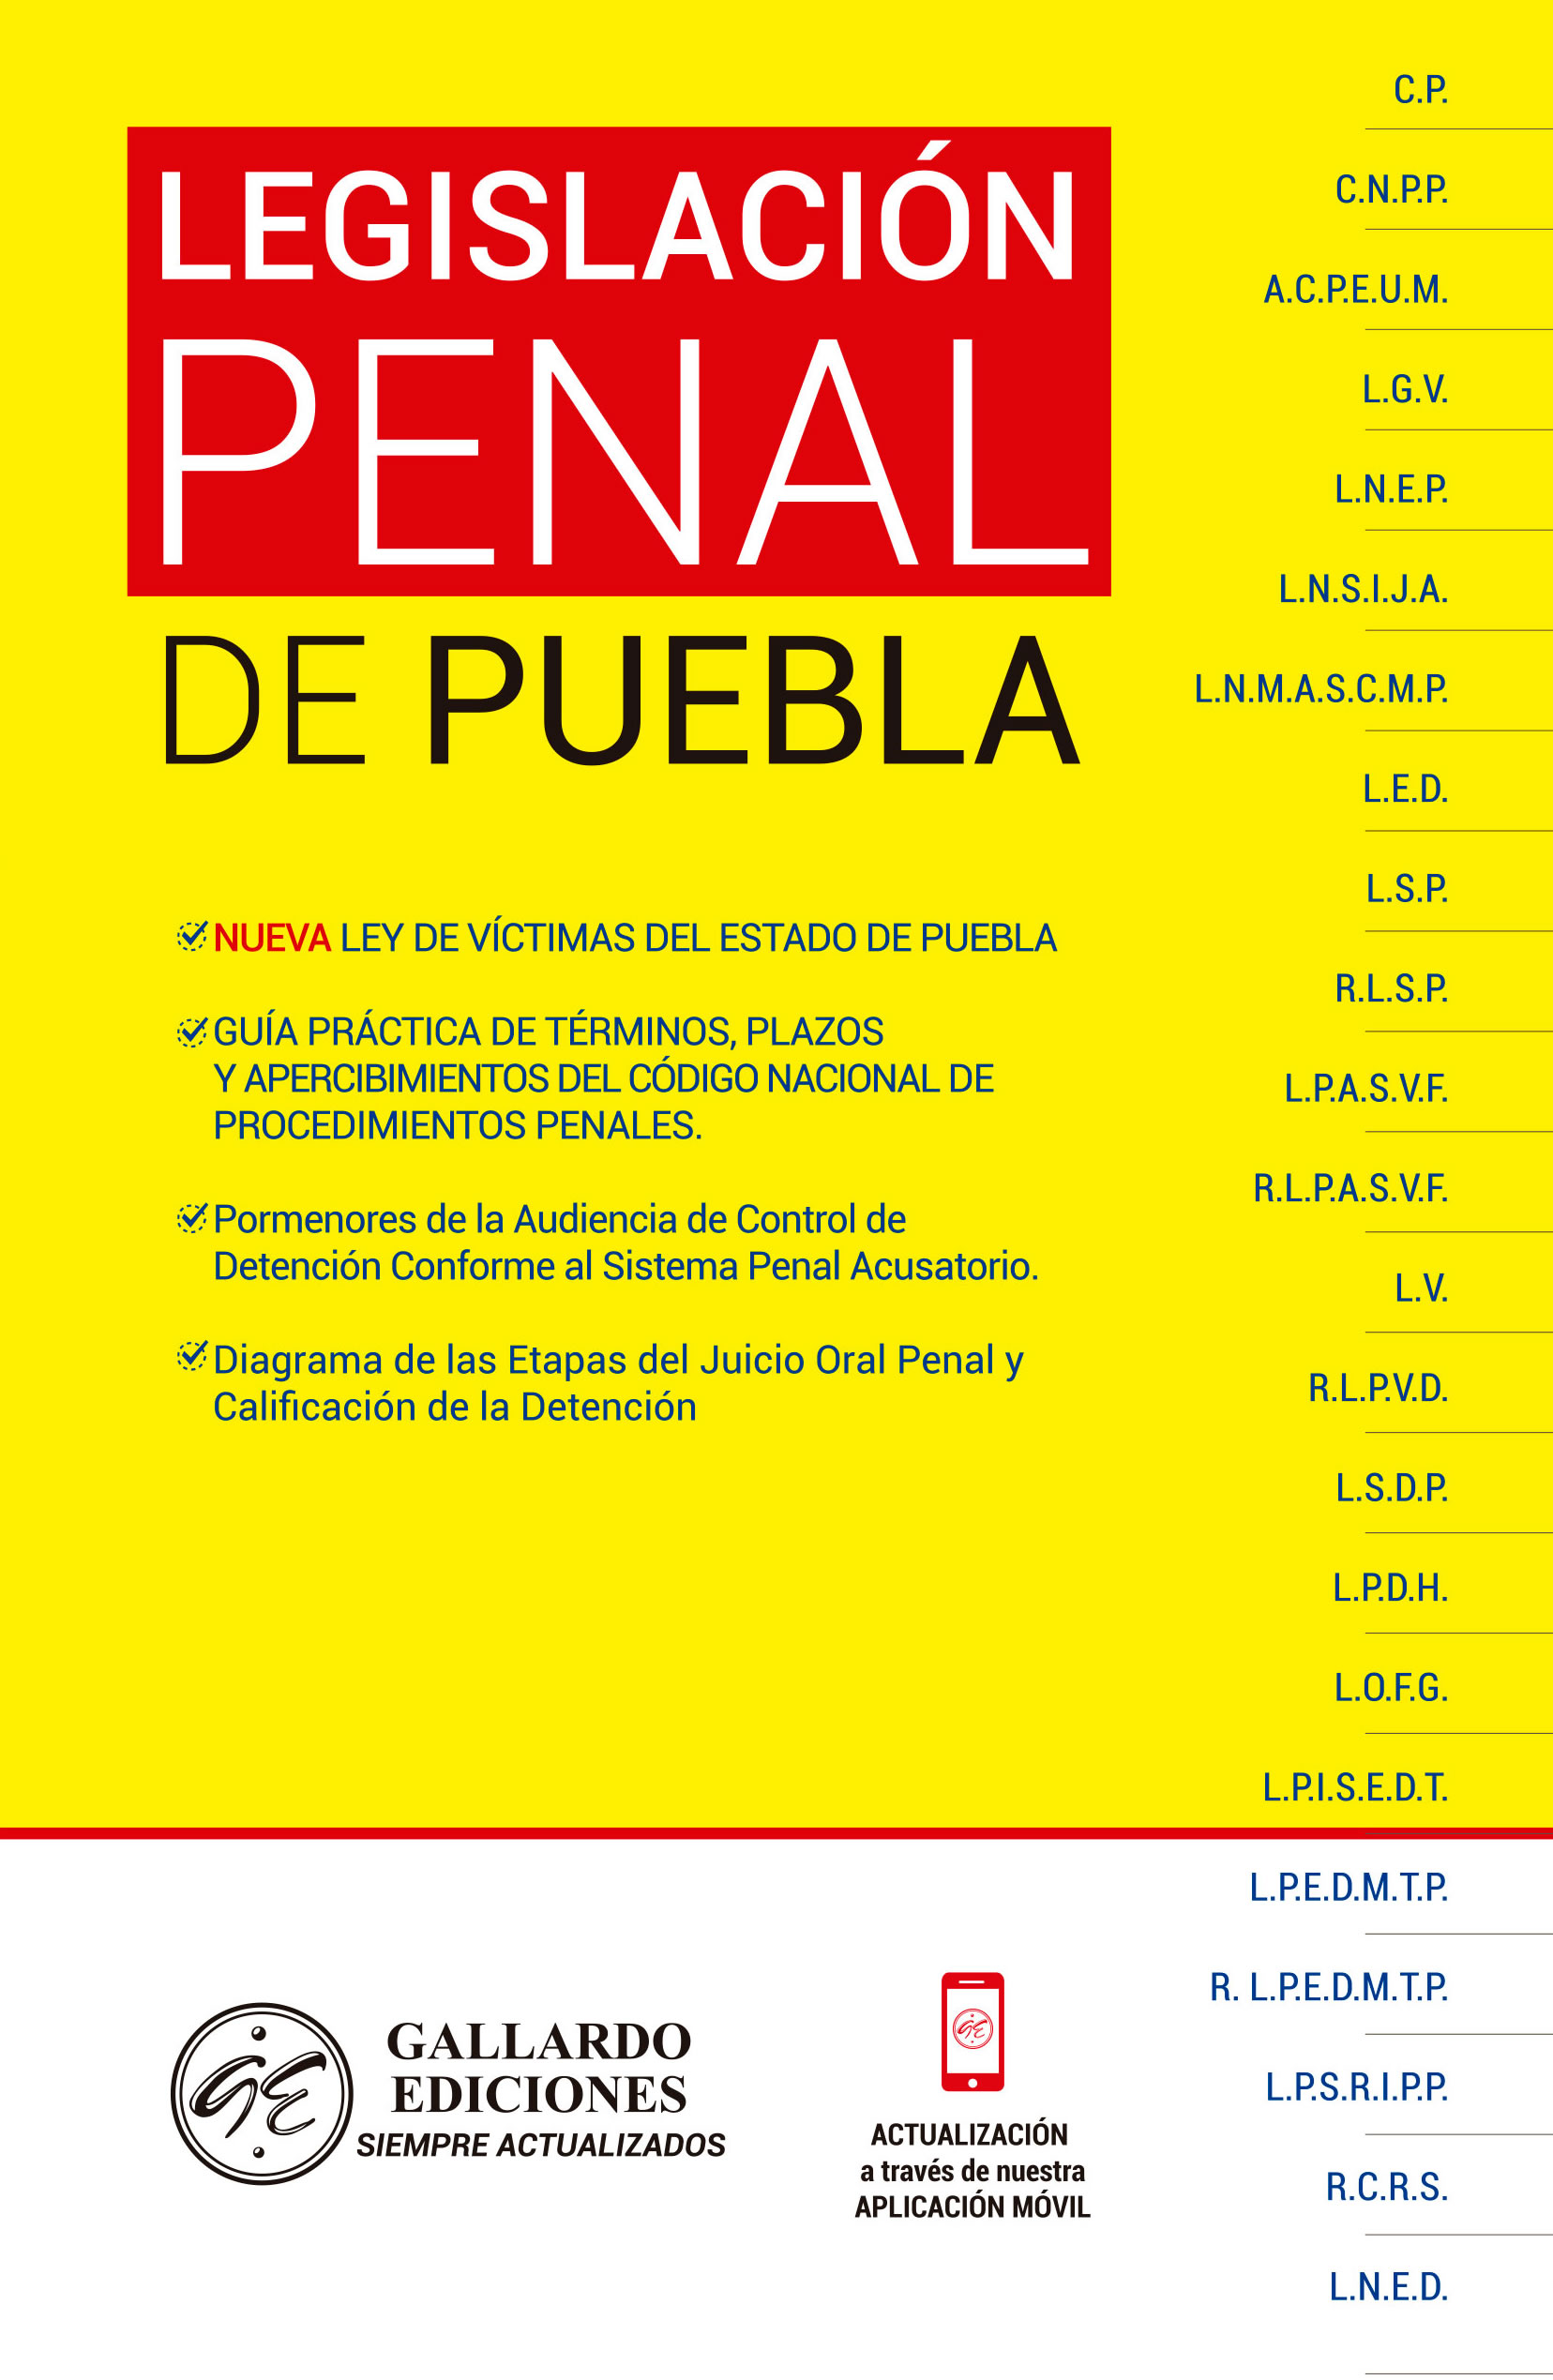 Legislación Penal de Puebla 2020 Gallardo Ediciones